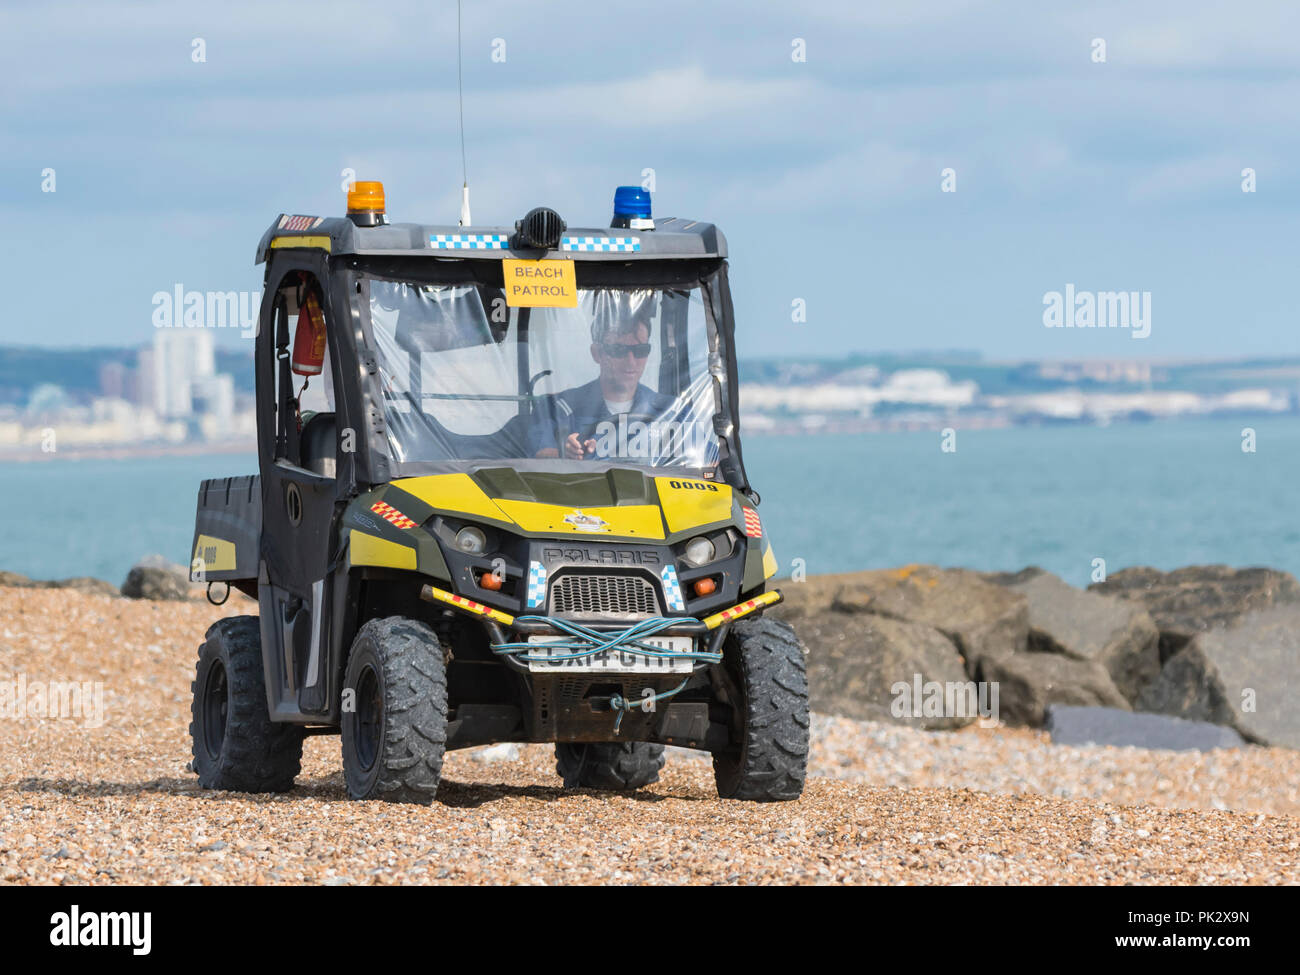 Polaris Sportsman 400 4x4 véhicule utilitaire léger de patrouille de plage sur une plage de galets sur la côte sud de l'Angleterre, Royaume-Uni. Banque D'Images